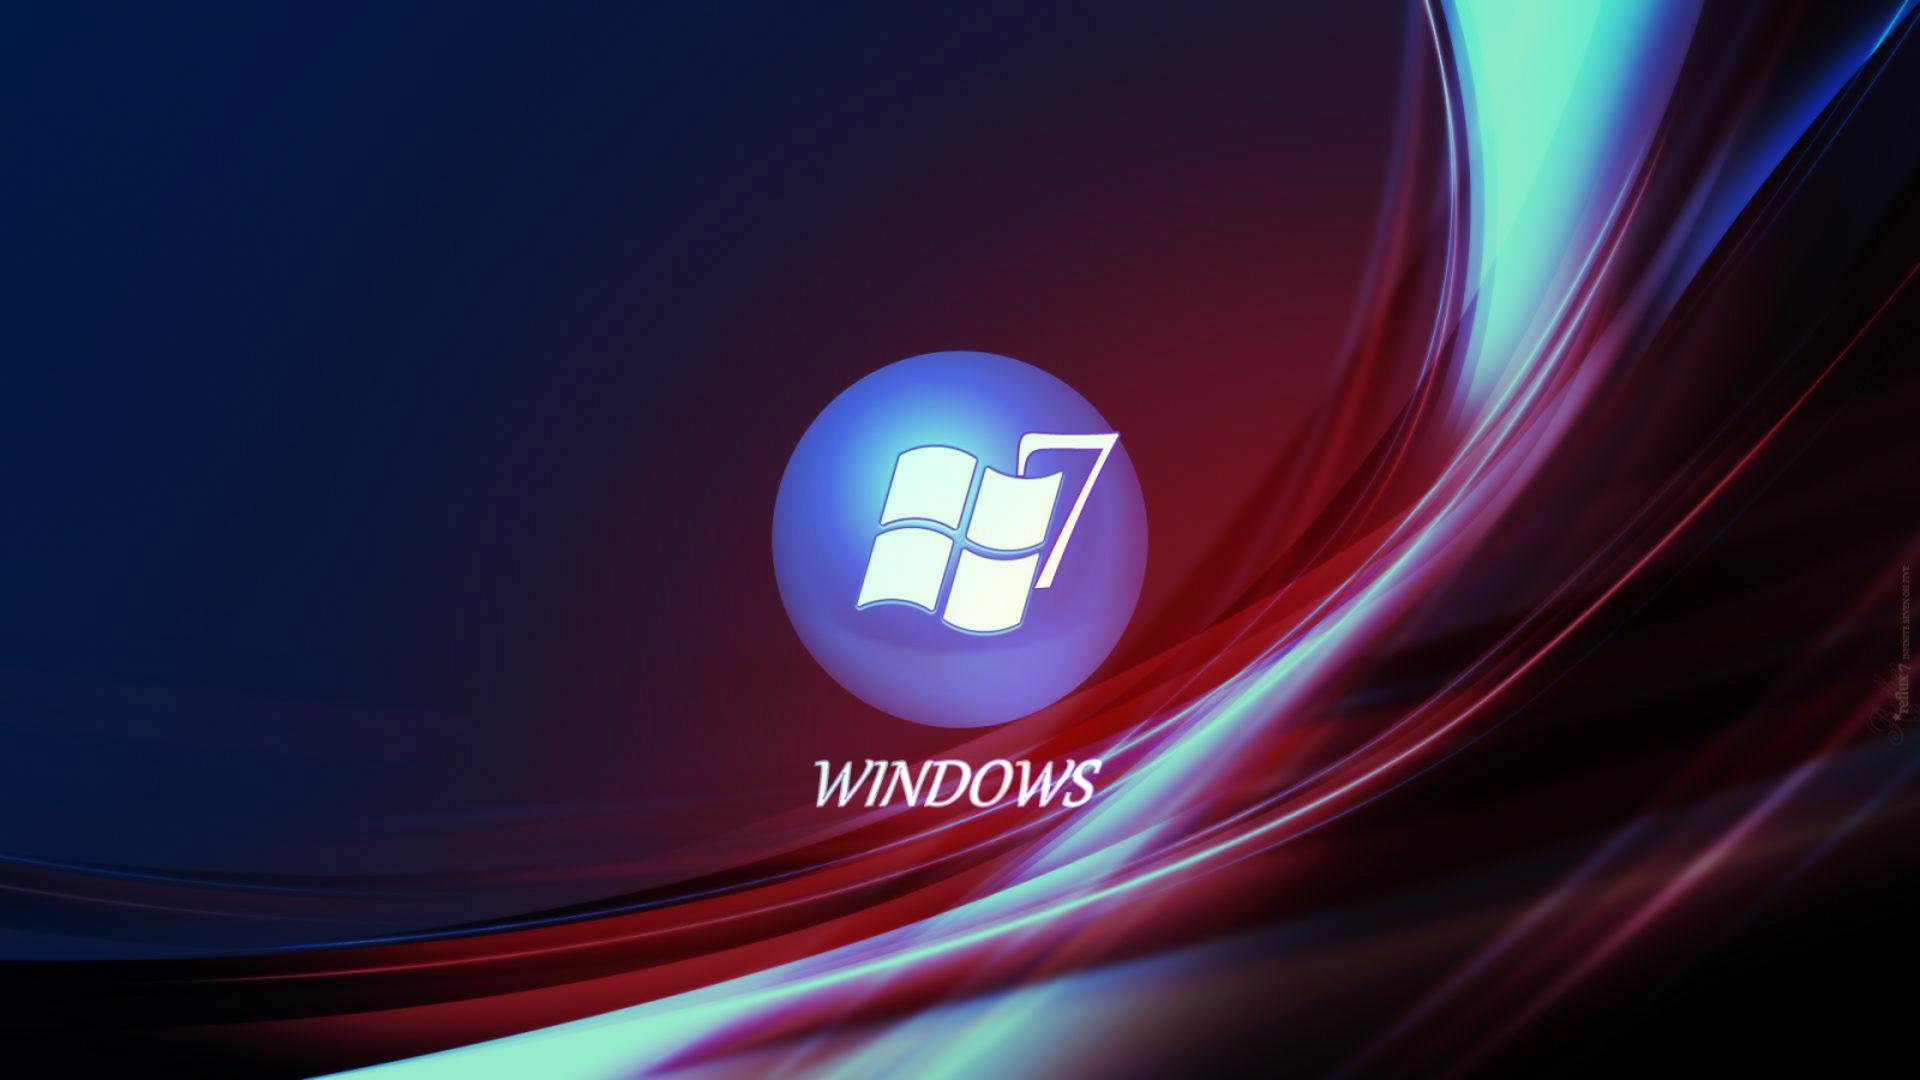 Windows 7